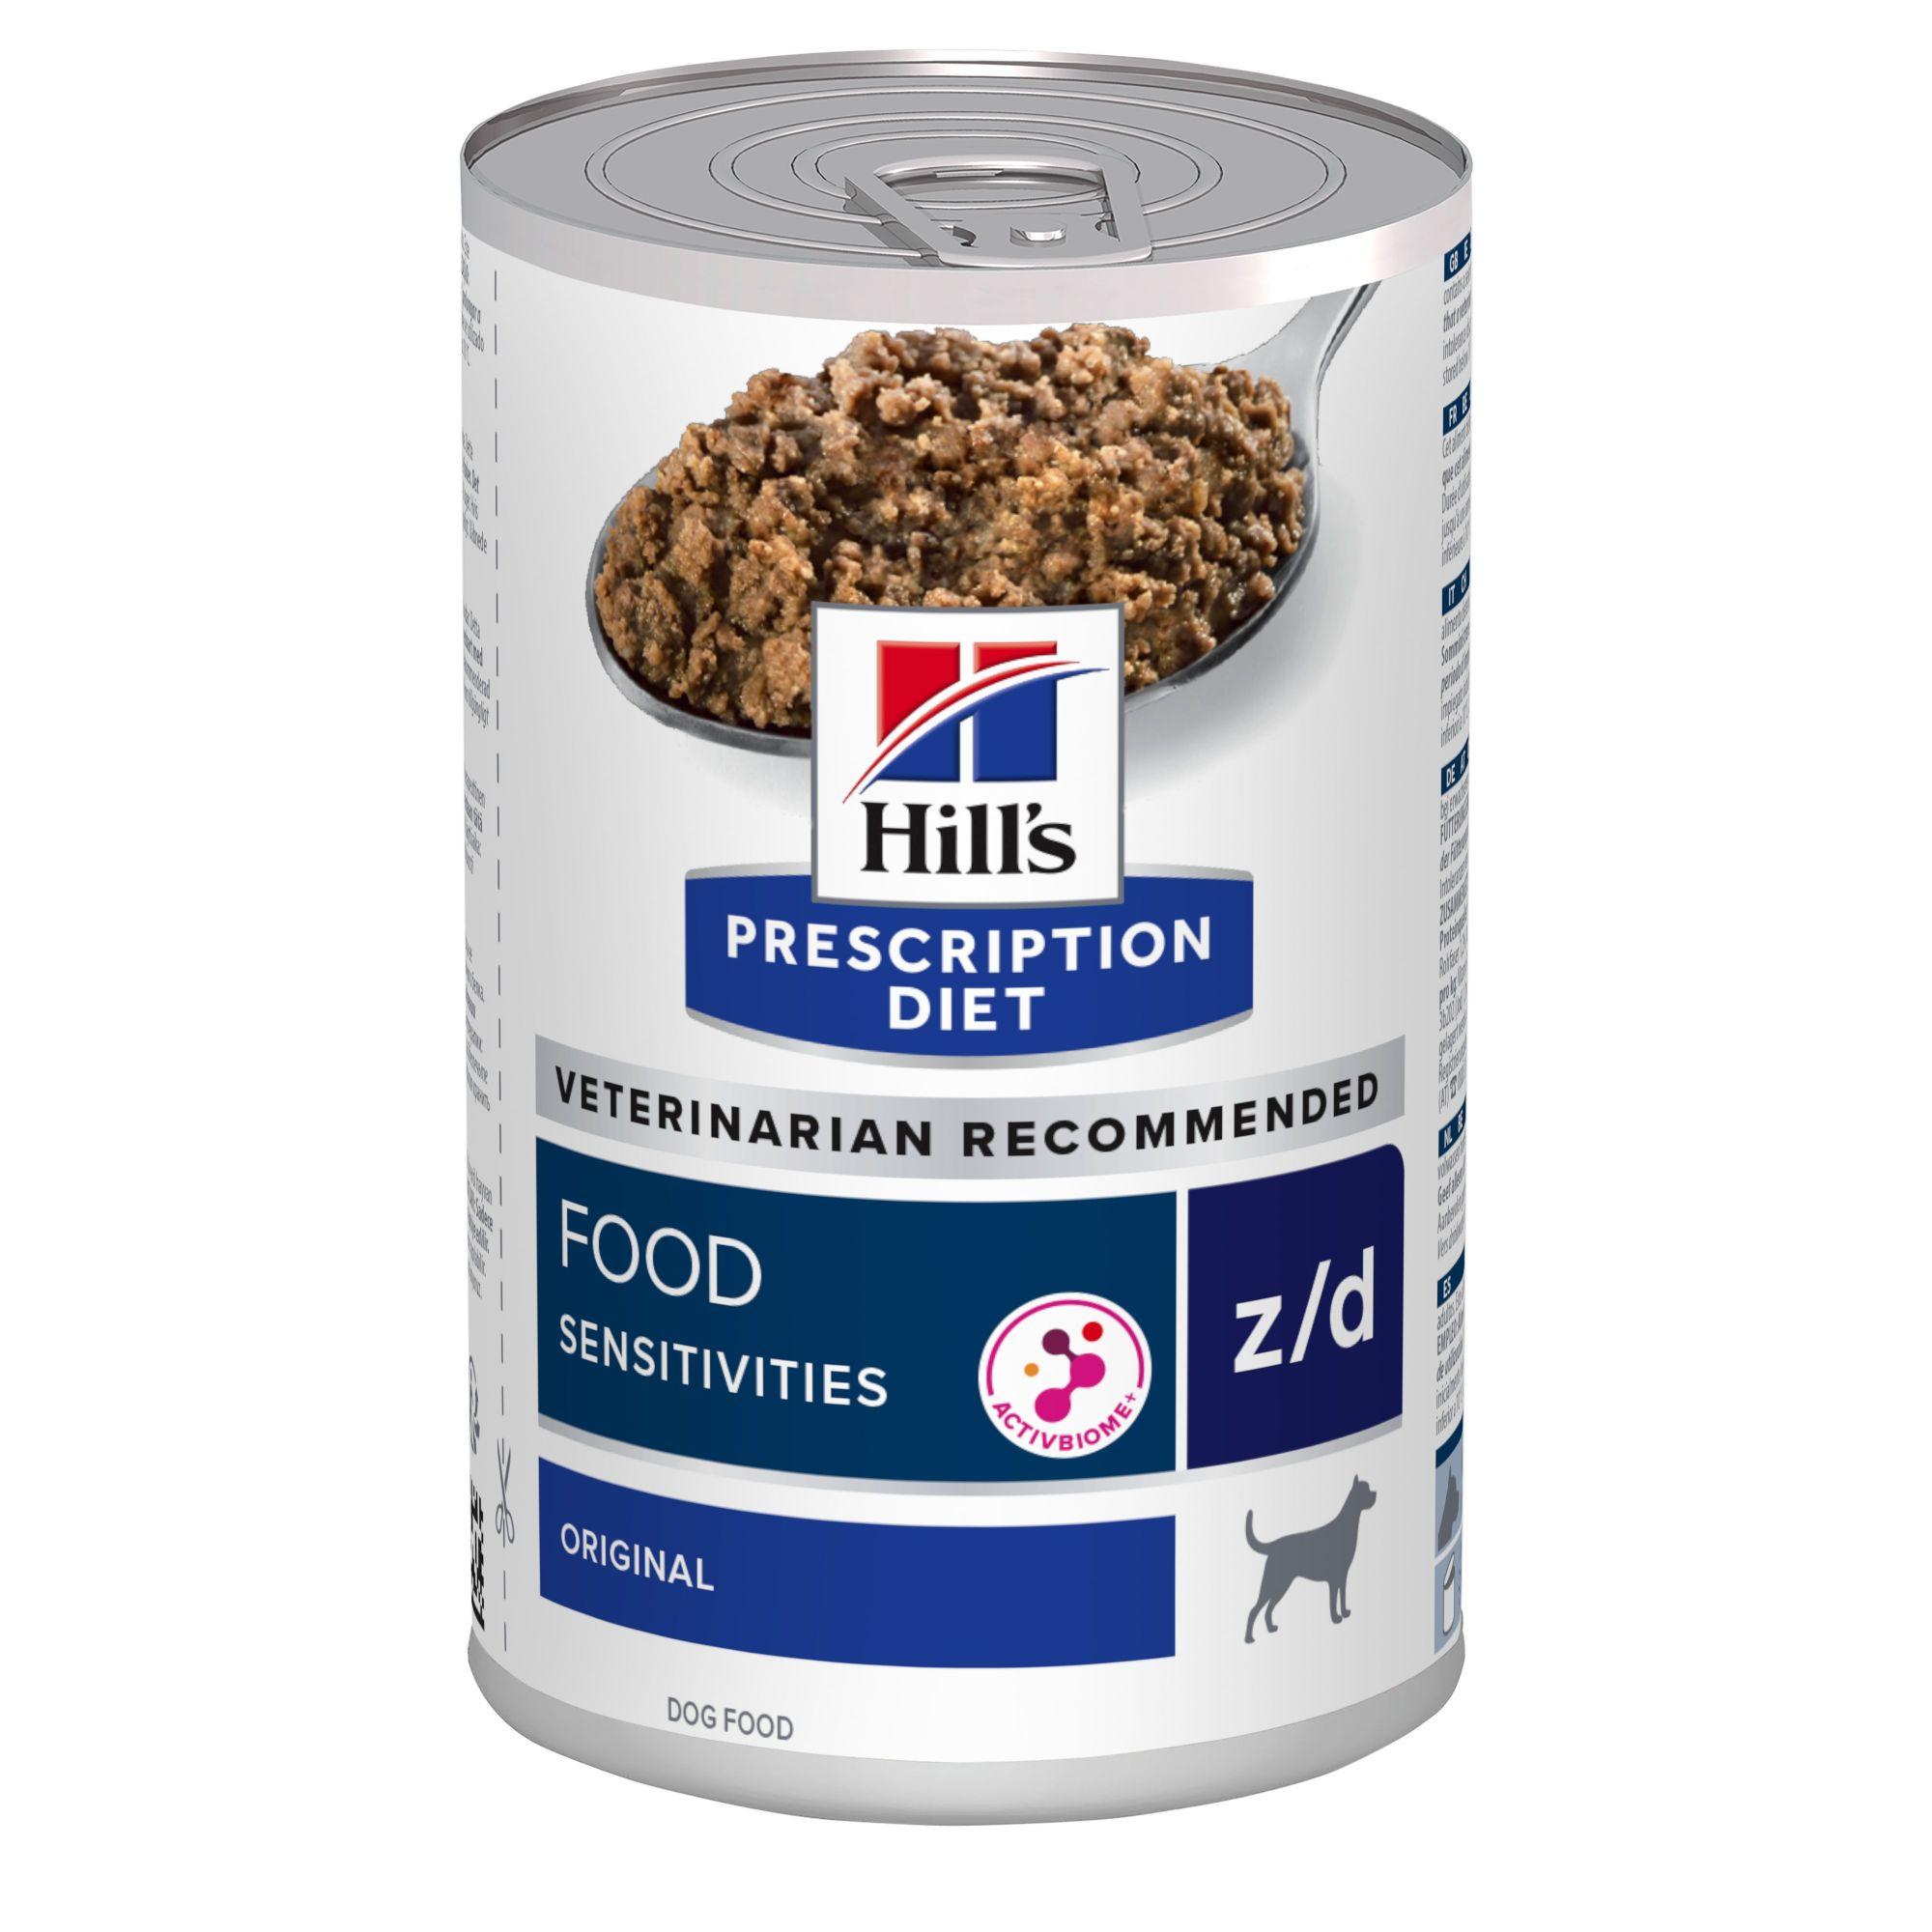 Hill's Prescription Diet Z/D Food Sensitivities natvoer voor honden